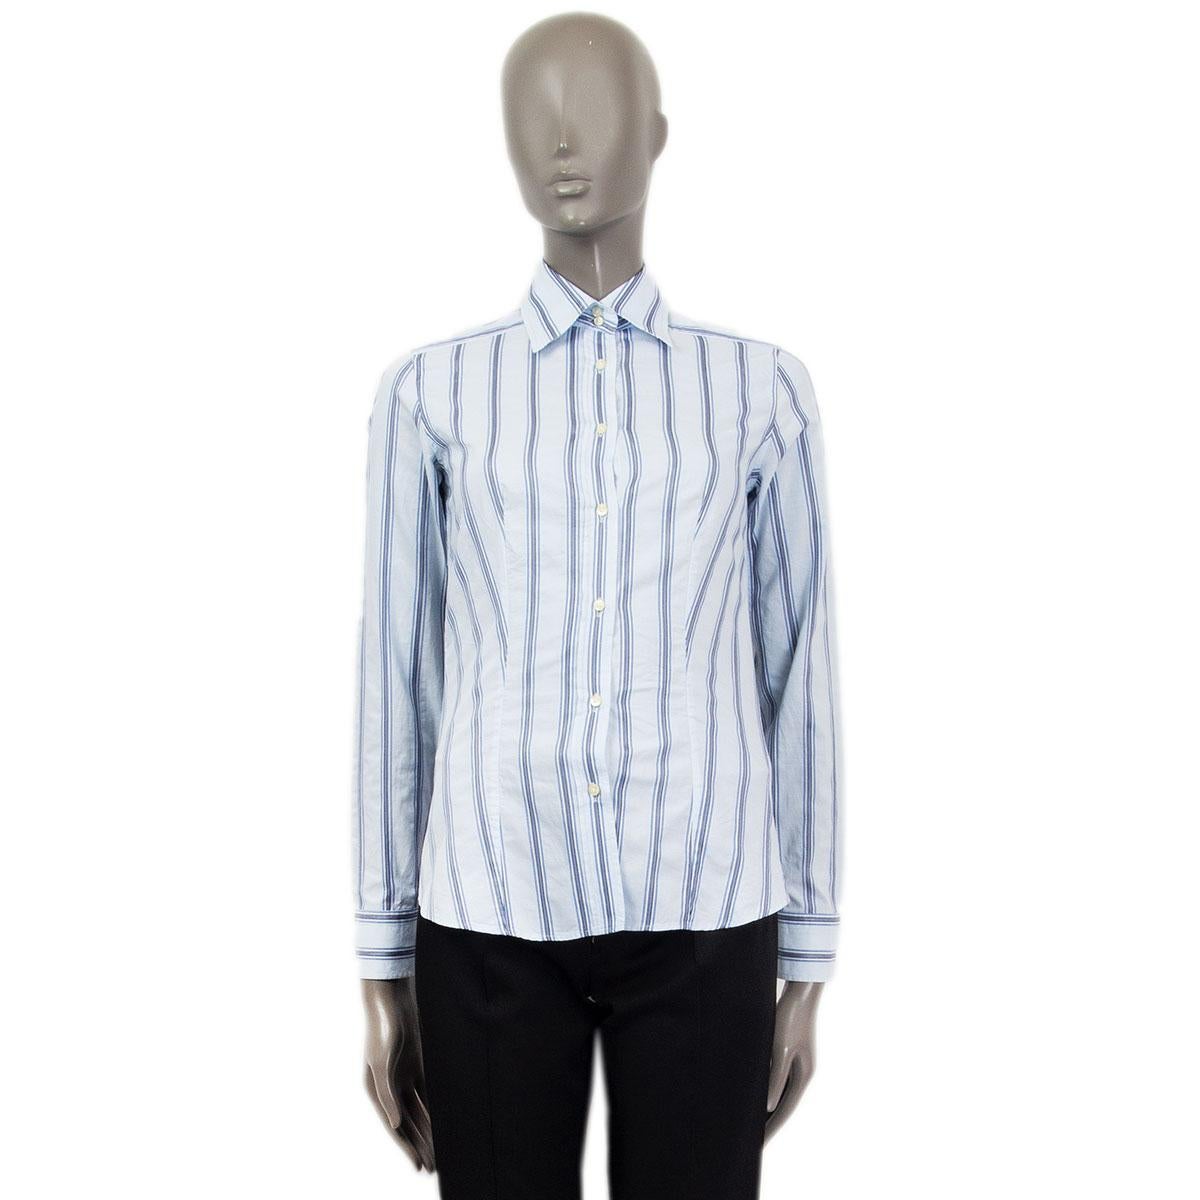 chemise rayée boutonnée Etro 100% authentique en coton bleu clair, noir et blanc (100%) avec manches boutonnées. Se ferme par deux boutons à l'encolure et huit boutons à l'avant. Non doublé. A été porté et est en excellent état.

Mesures
Taille de